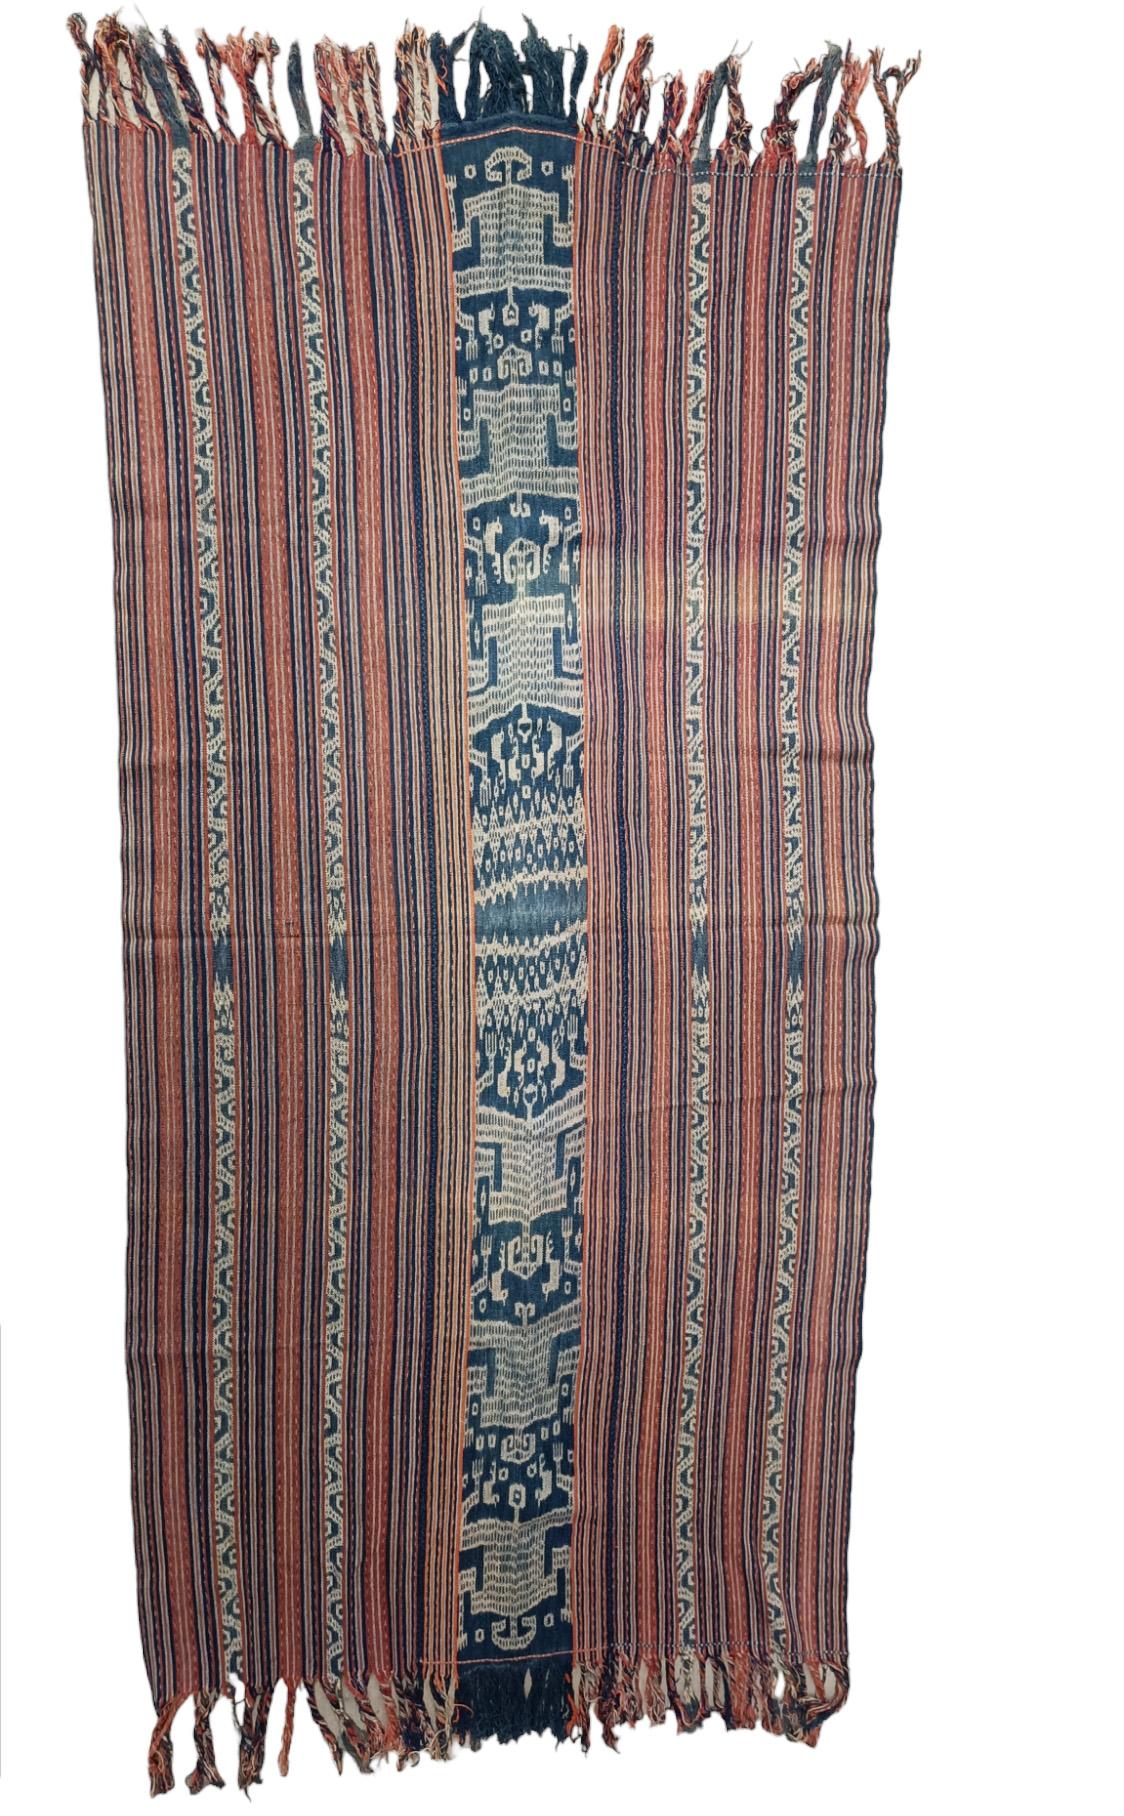 Tissu Ikat antique tissé sur l'île de Timor en Indonésie, fabriqué à partir de fils de coton teints naturellement et filés à la main. 

Composé de deux panneaux cousus ensemble pour former un tissu plus grand, une technique souvent utilisée dans les